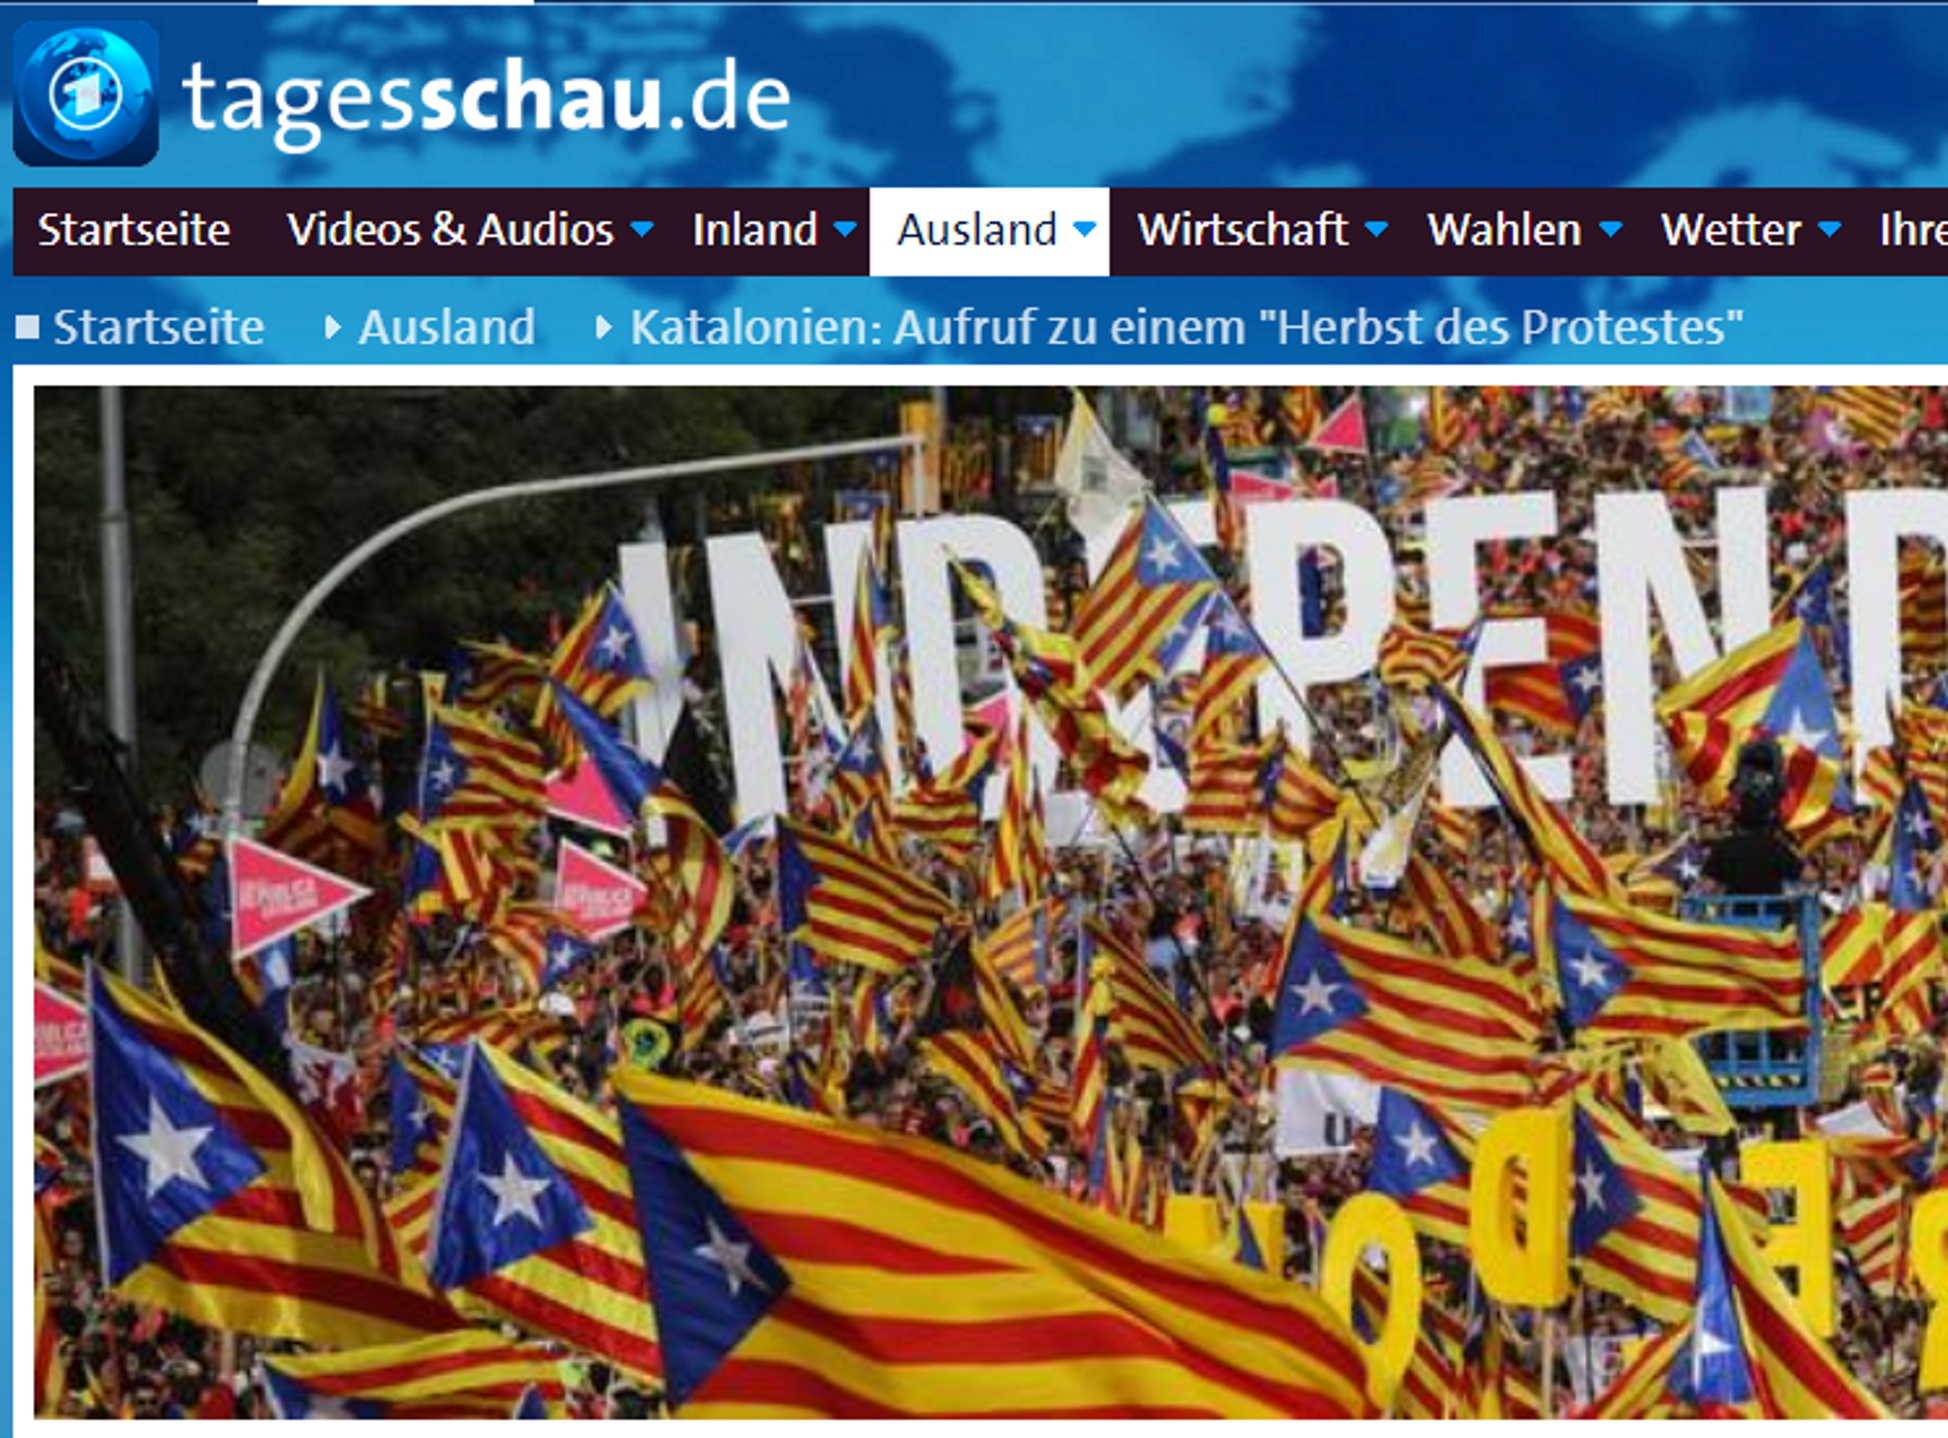 La televisión alemana advierte: "Llega un otoño de protestas en Catalunya"